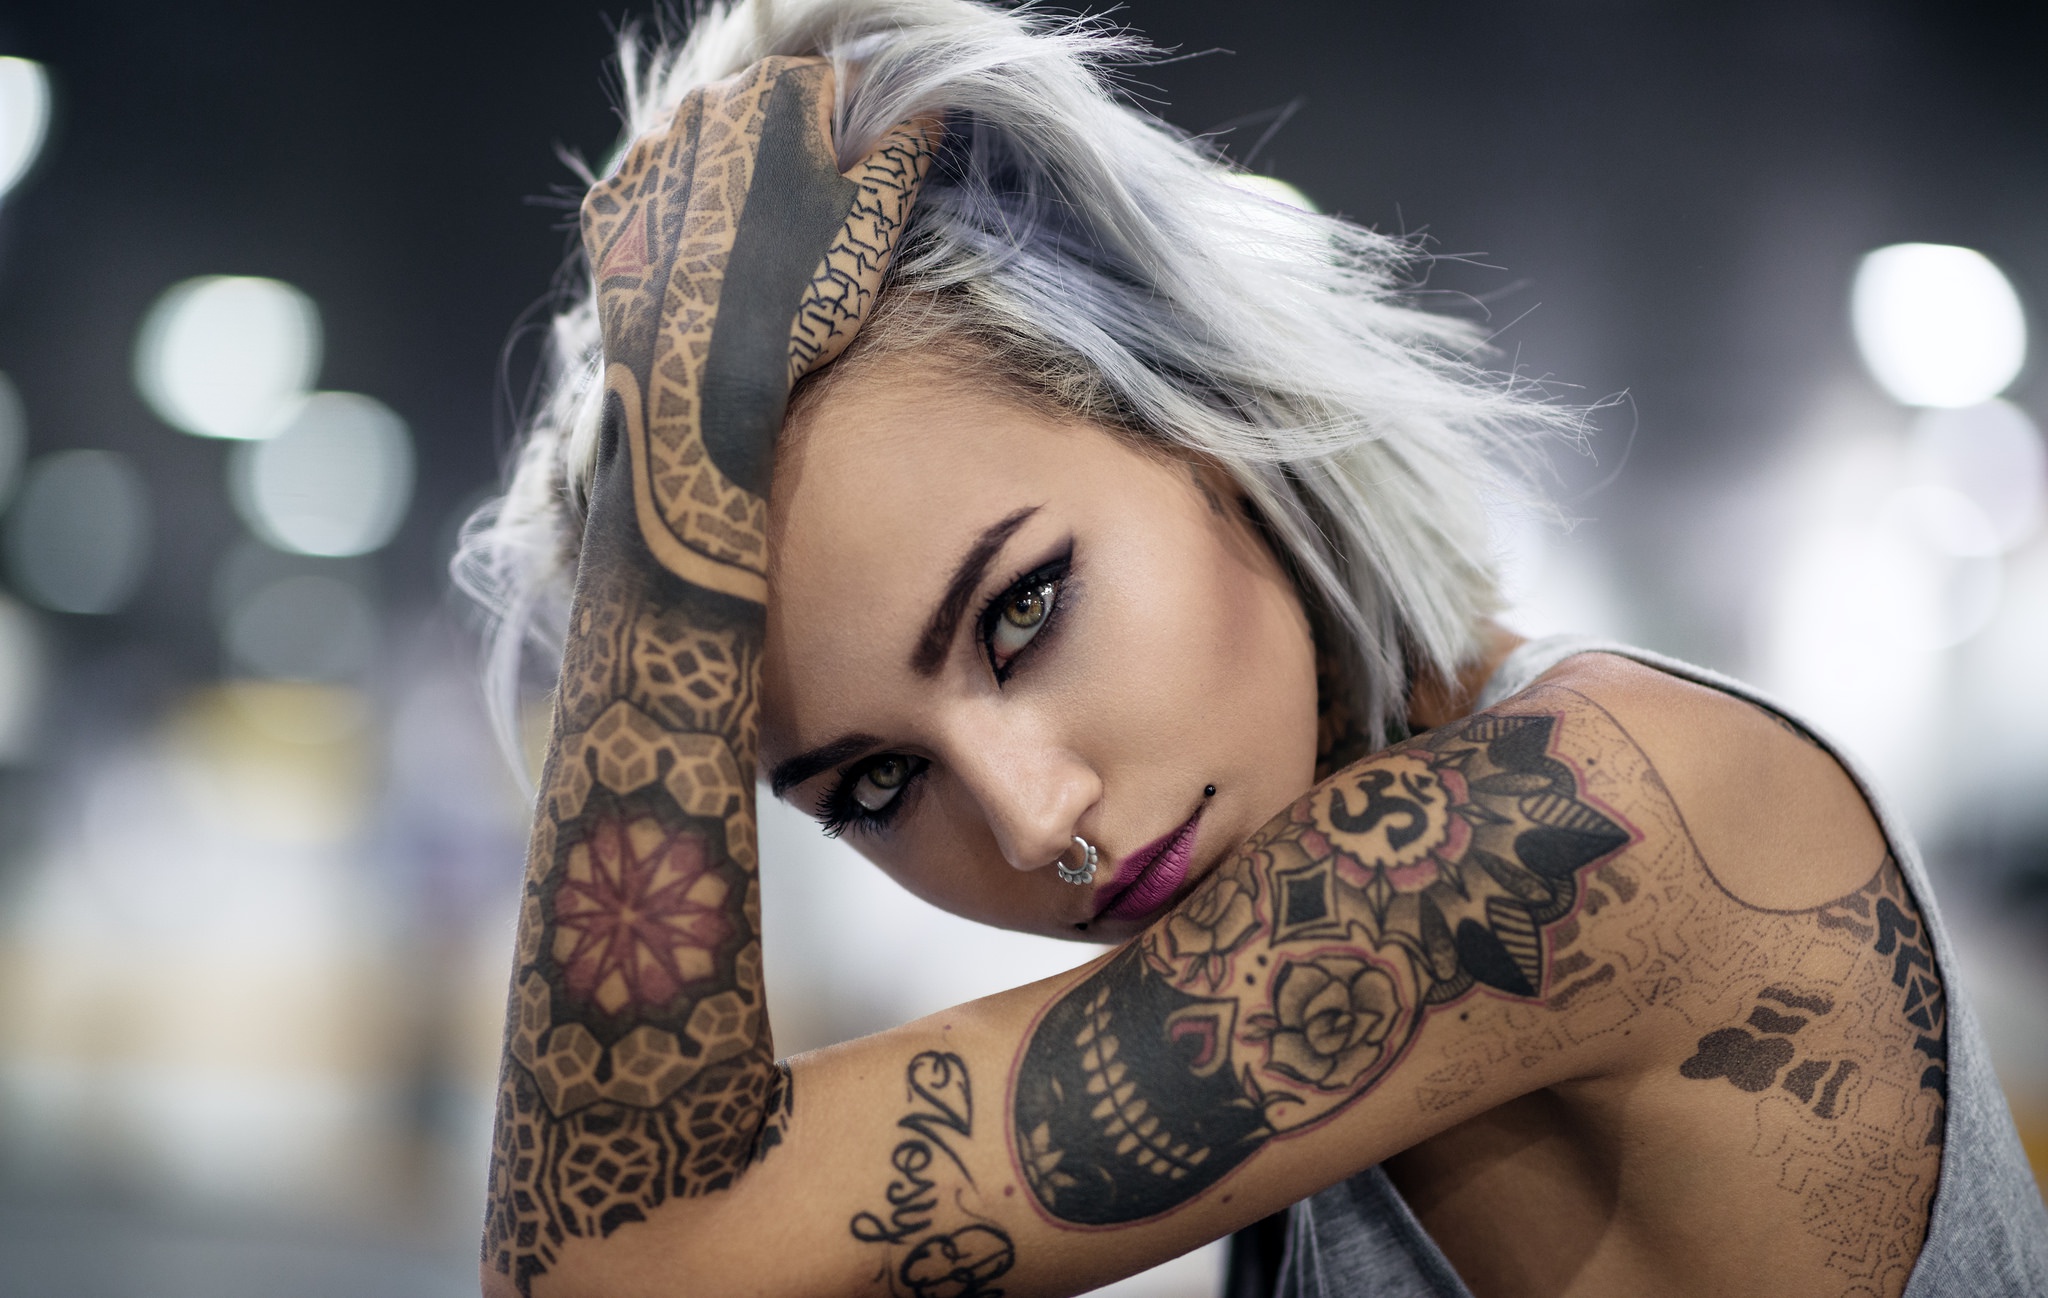 Татуировки на девушках. Украшение тела или осквернение?